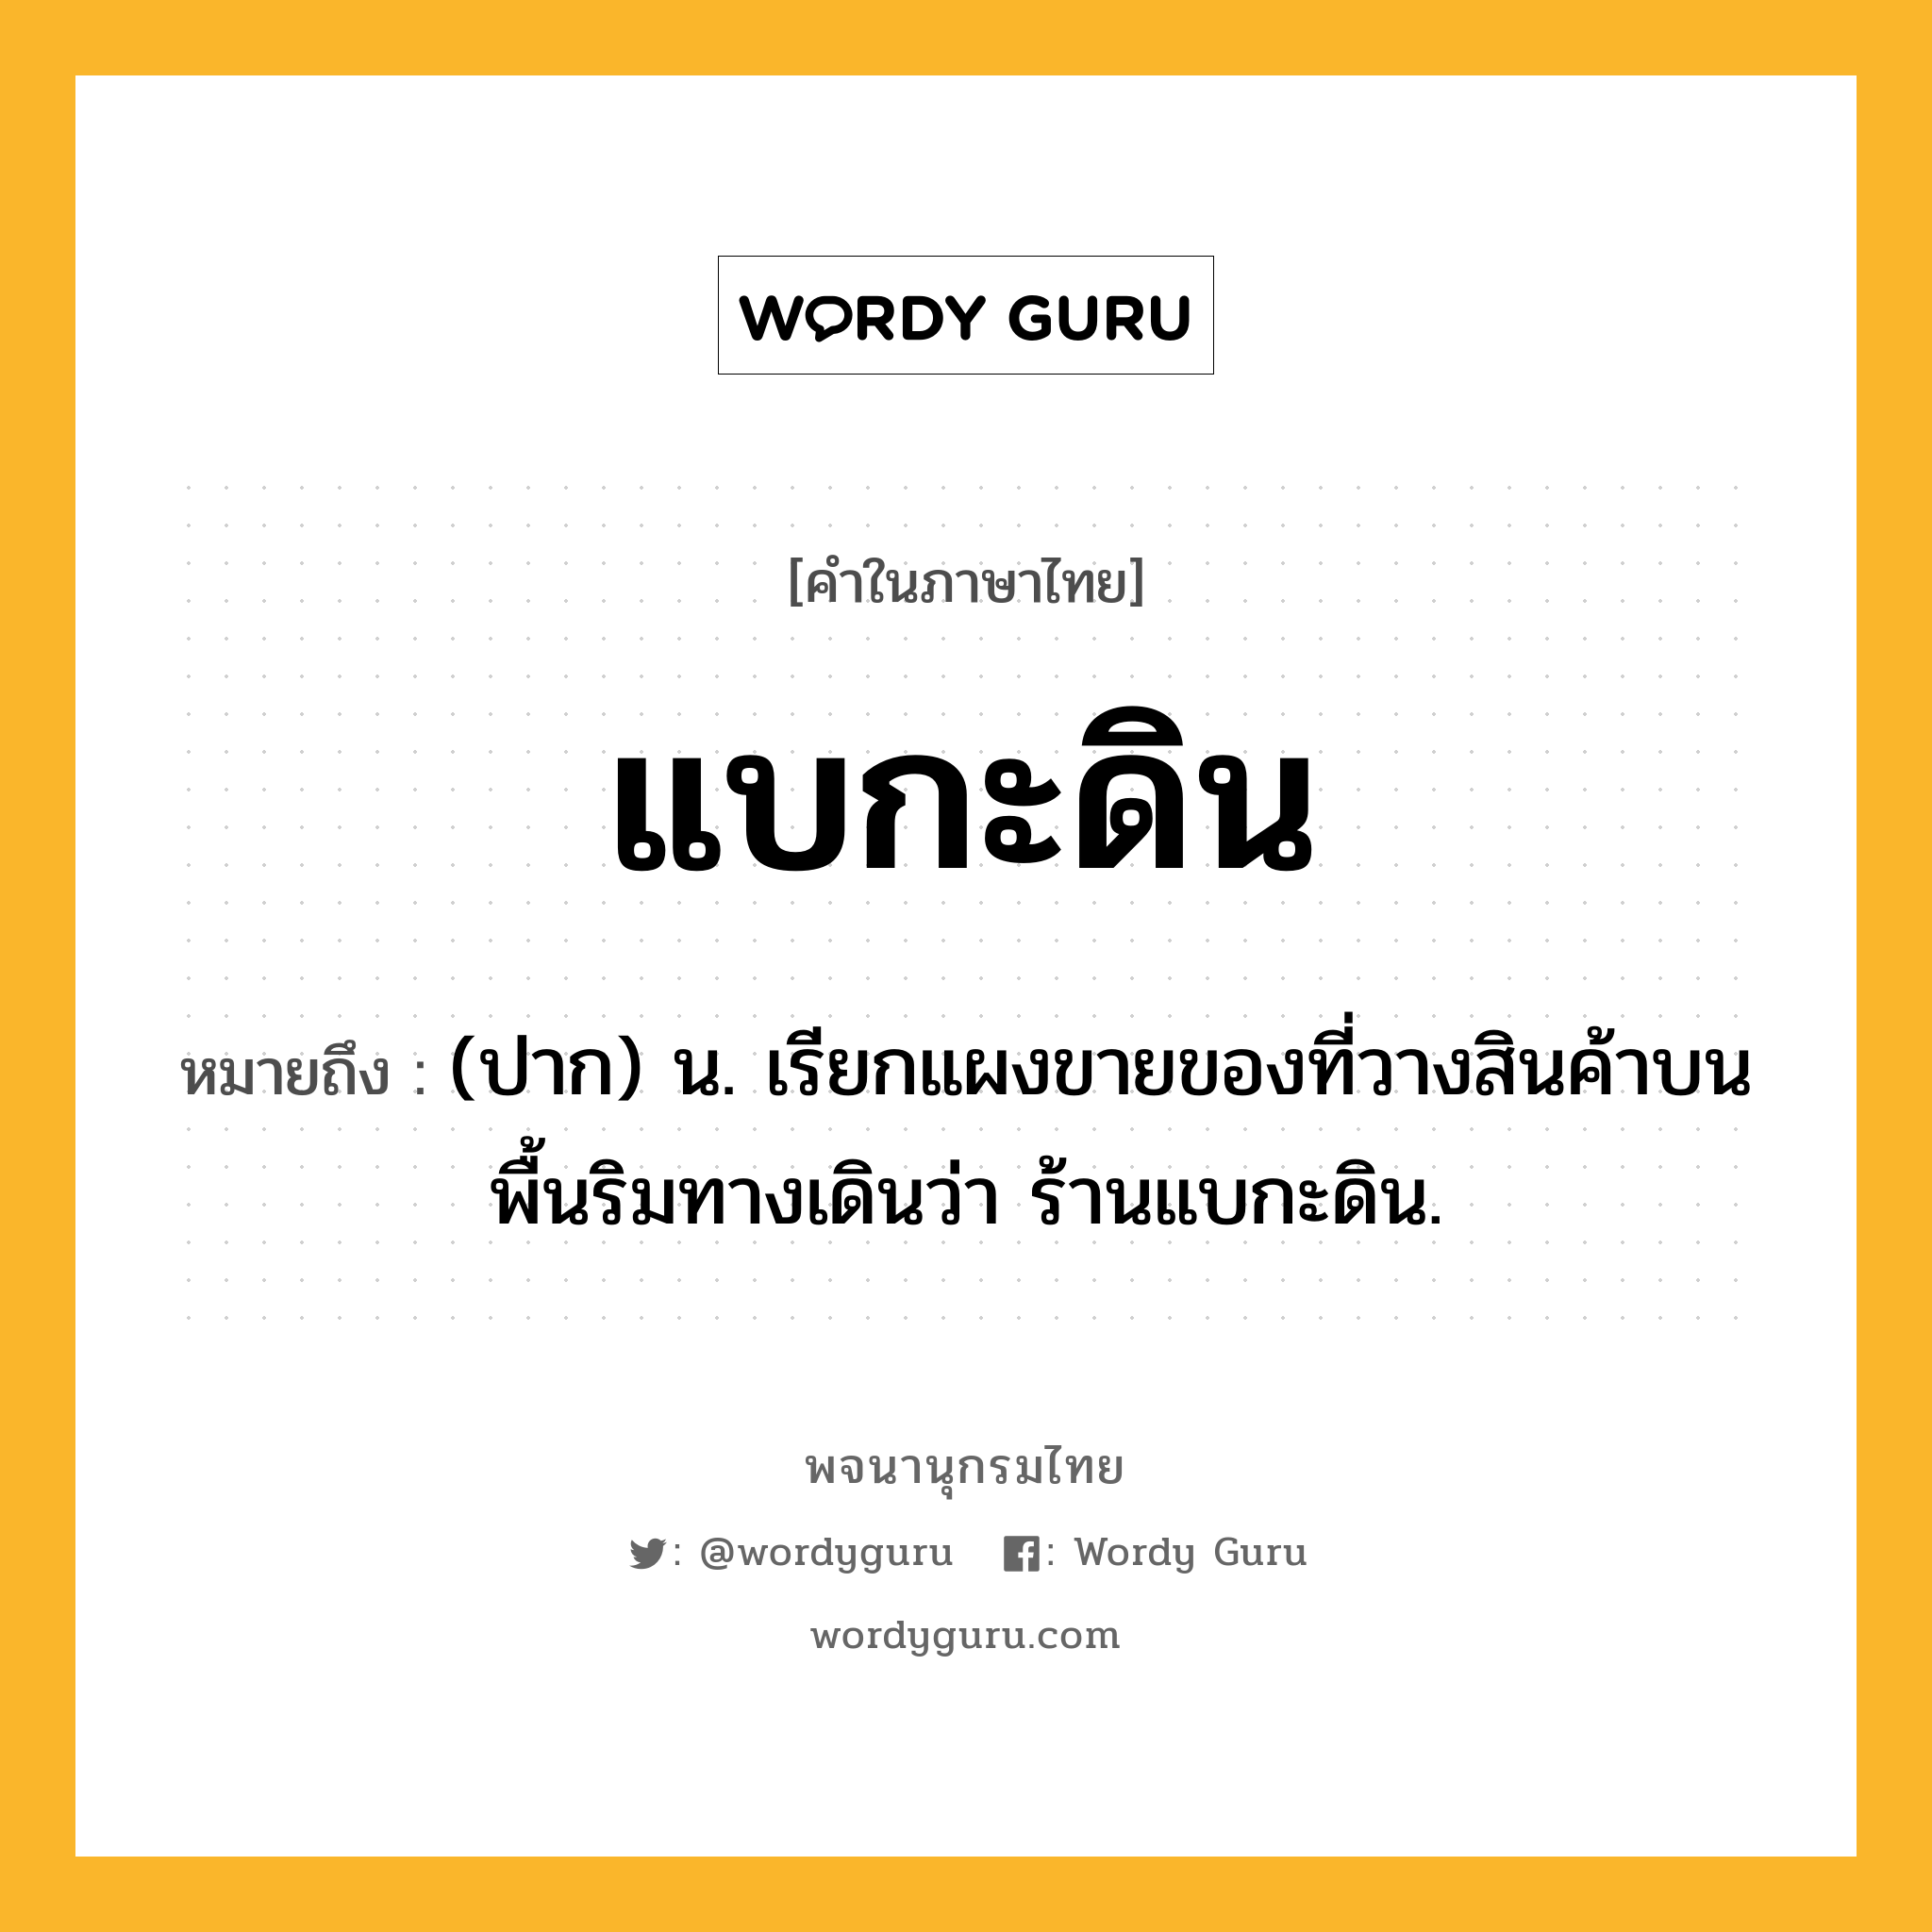 แบกะดิน ความหมาย หมายถึงอะไร?, คำในภาษาไทย แบกะดิน หมายถึง (ปาก) น. เรียกแผงขายของที่วางสินค้าบนพื้นริมทางเดินว่า ร้านแบกะดิน.